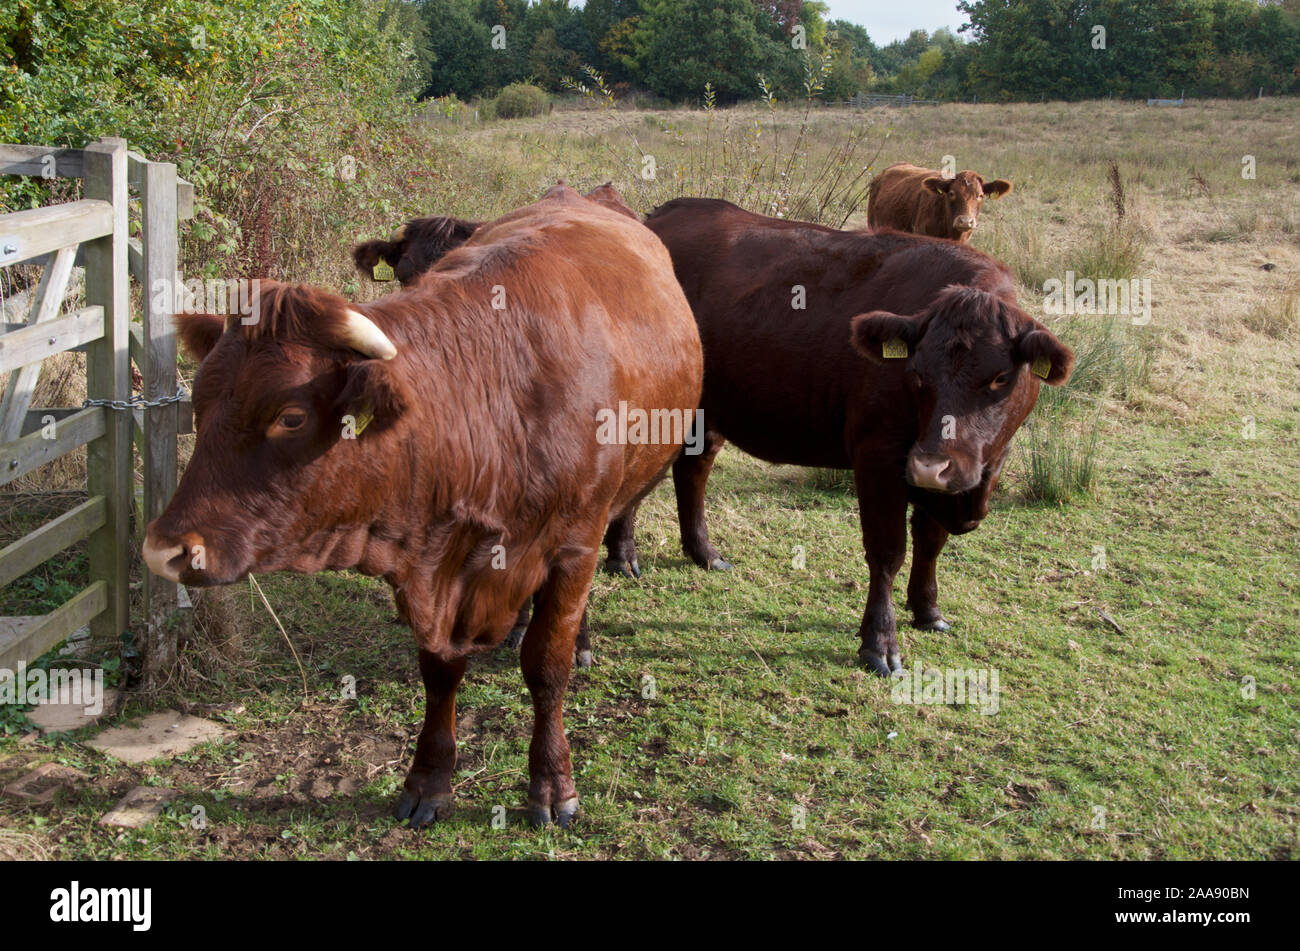 Dexter cattle in a field. Stock Photo